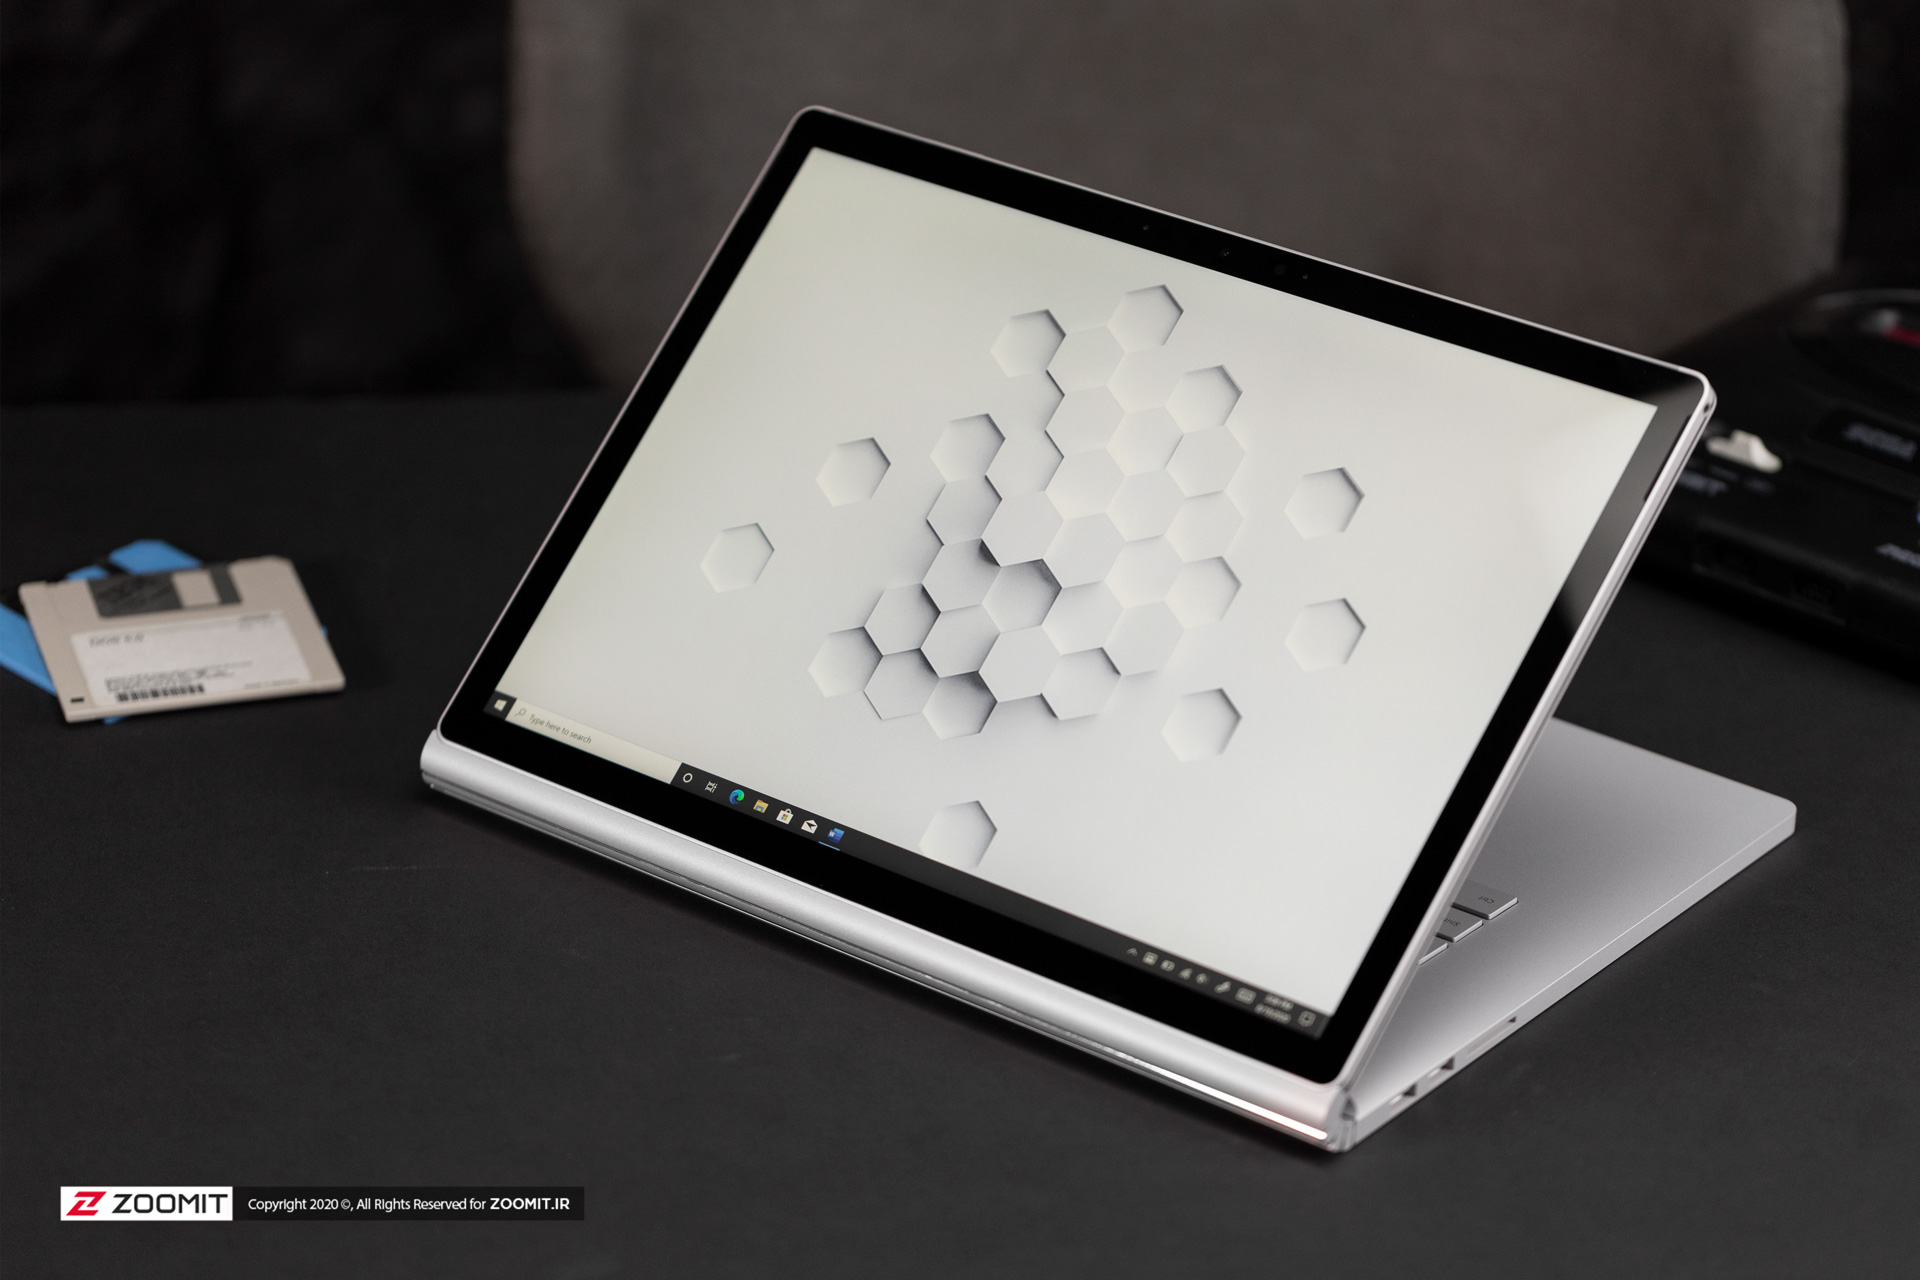 نمایشگر سرفیس بوک ۳ مایکروسافت / Microsoft Surface Book 3